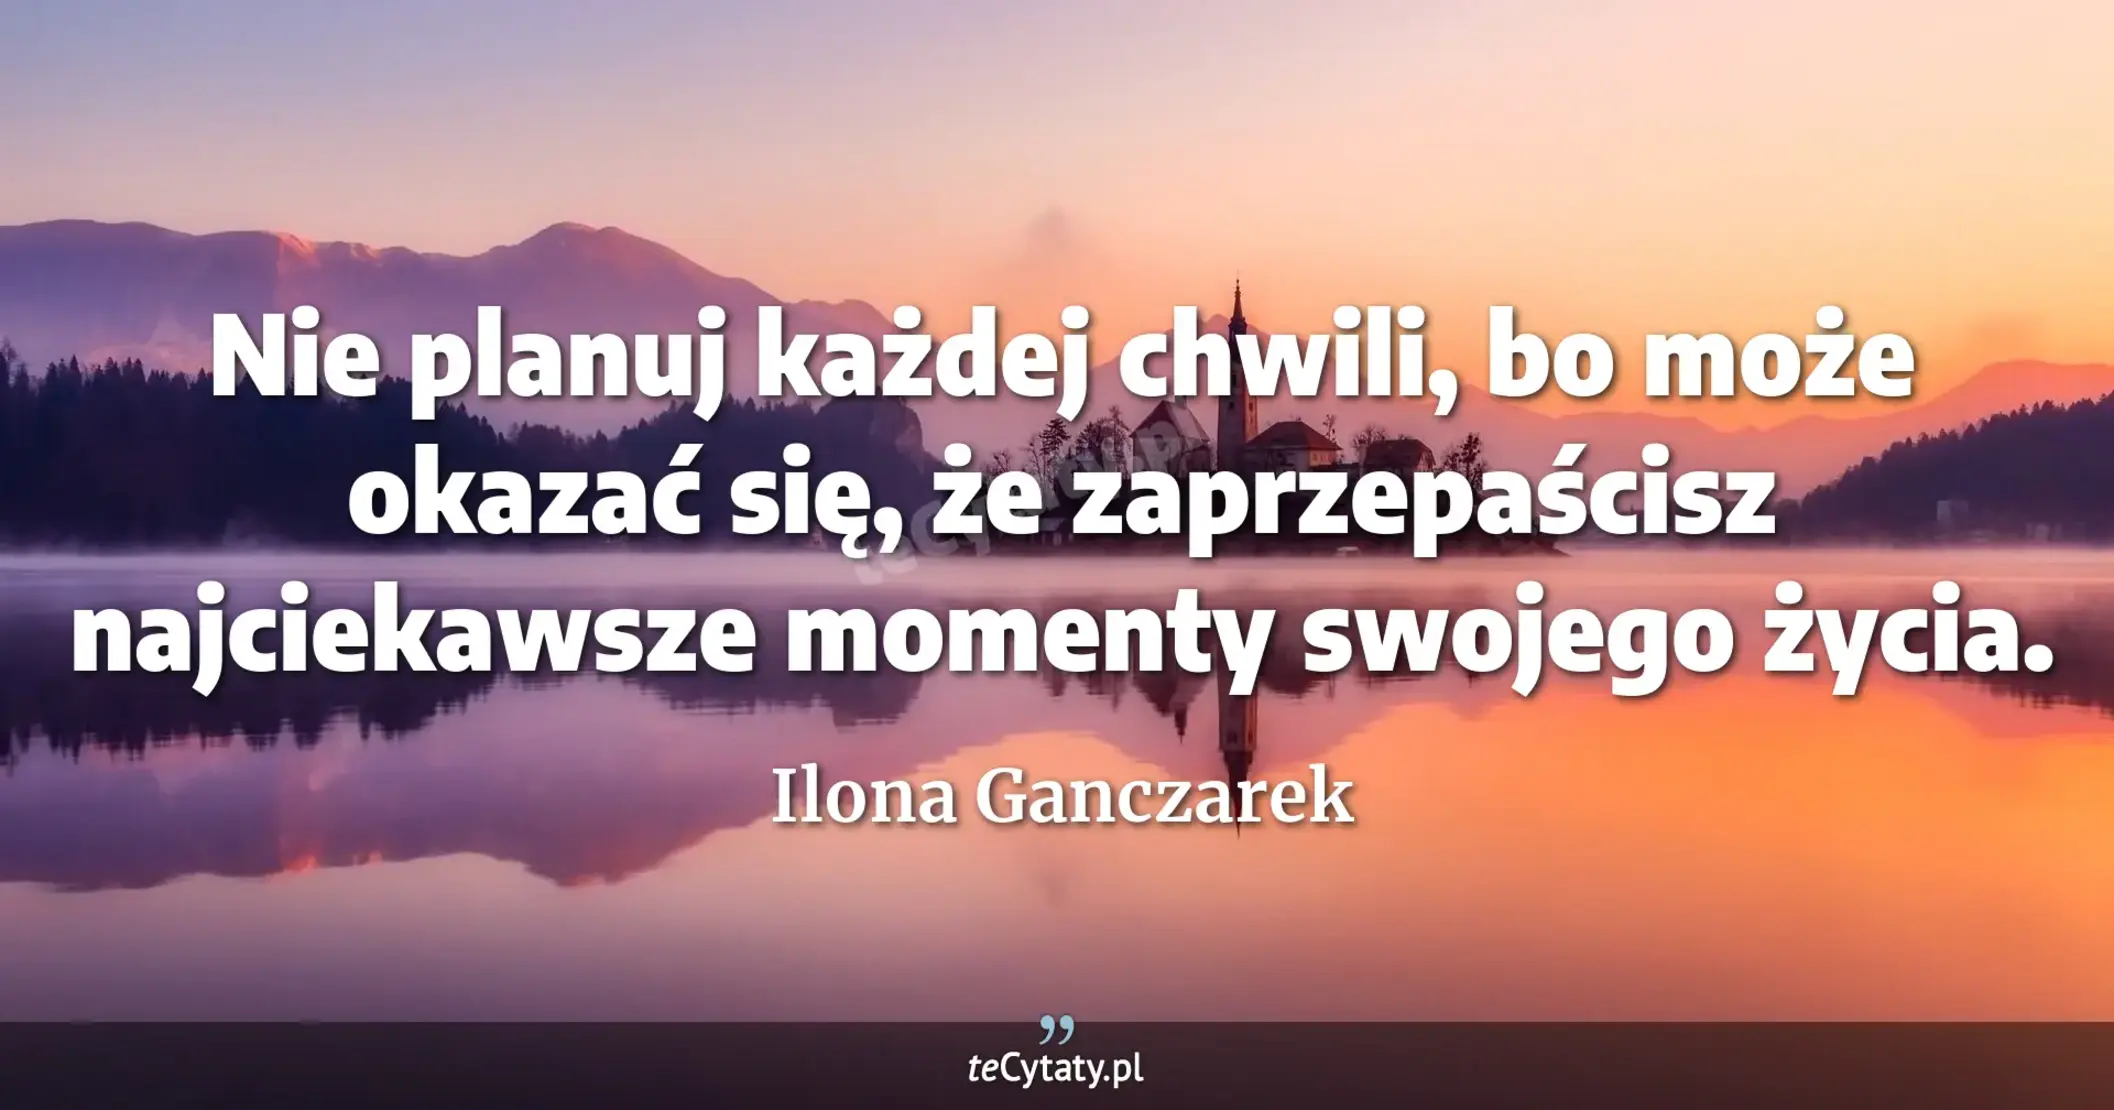 Nie planuj każdej chwili, bo może okazać się, że zaprzepaścisz najciekawsze momenty swojego życia. - Ilona Ganczarek